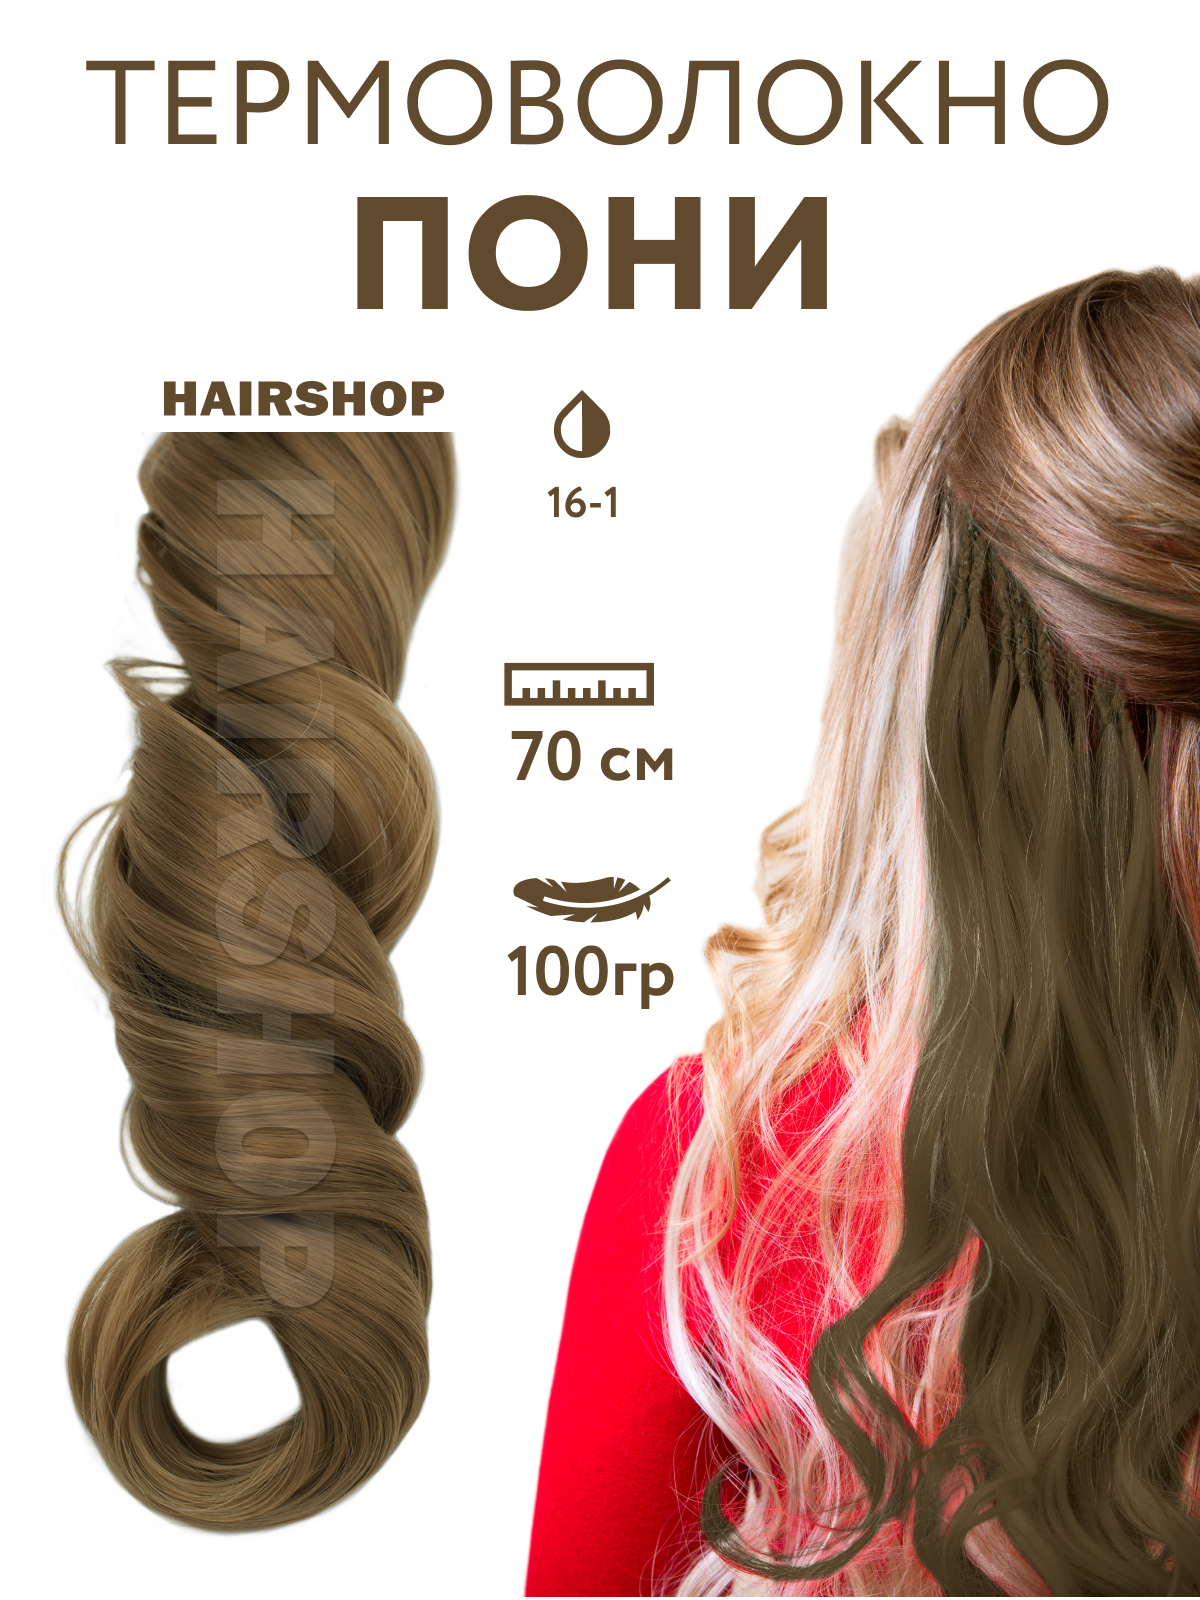 Канекалон Hairshop Пони HairUp для точечного афронаращивания 16-1 Пепельно-русый 1,4м канекалон hairshop пони hairup для точечного афронаращивания прямые 118 1 бордо 1 4м 100г